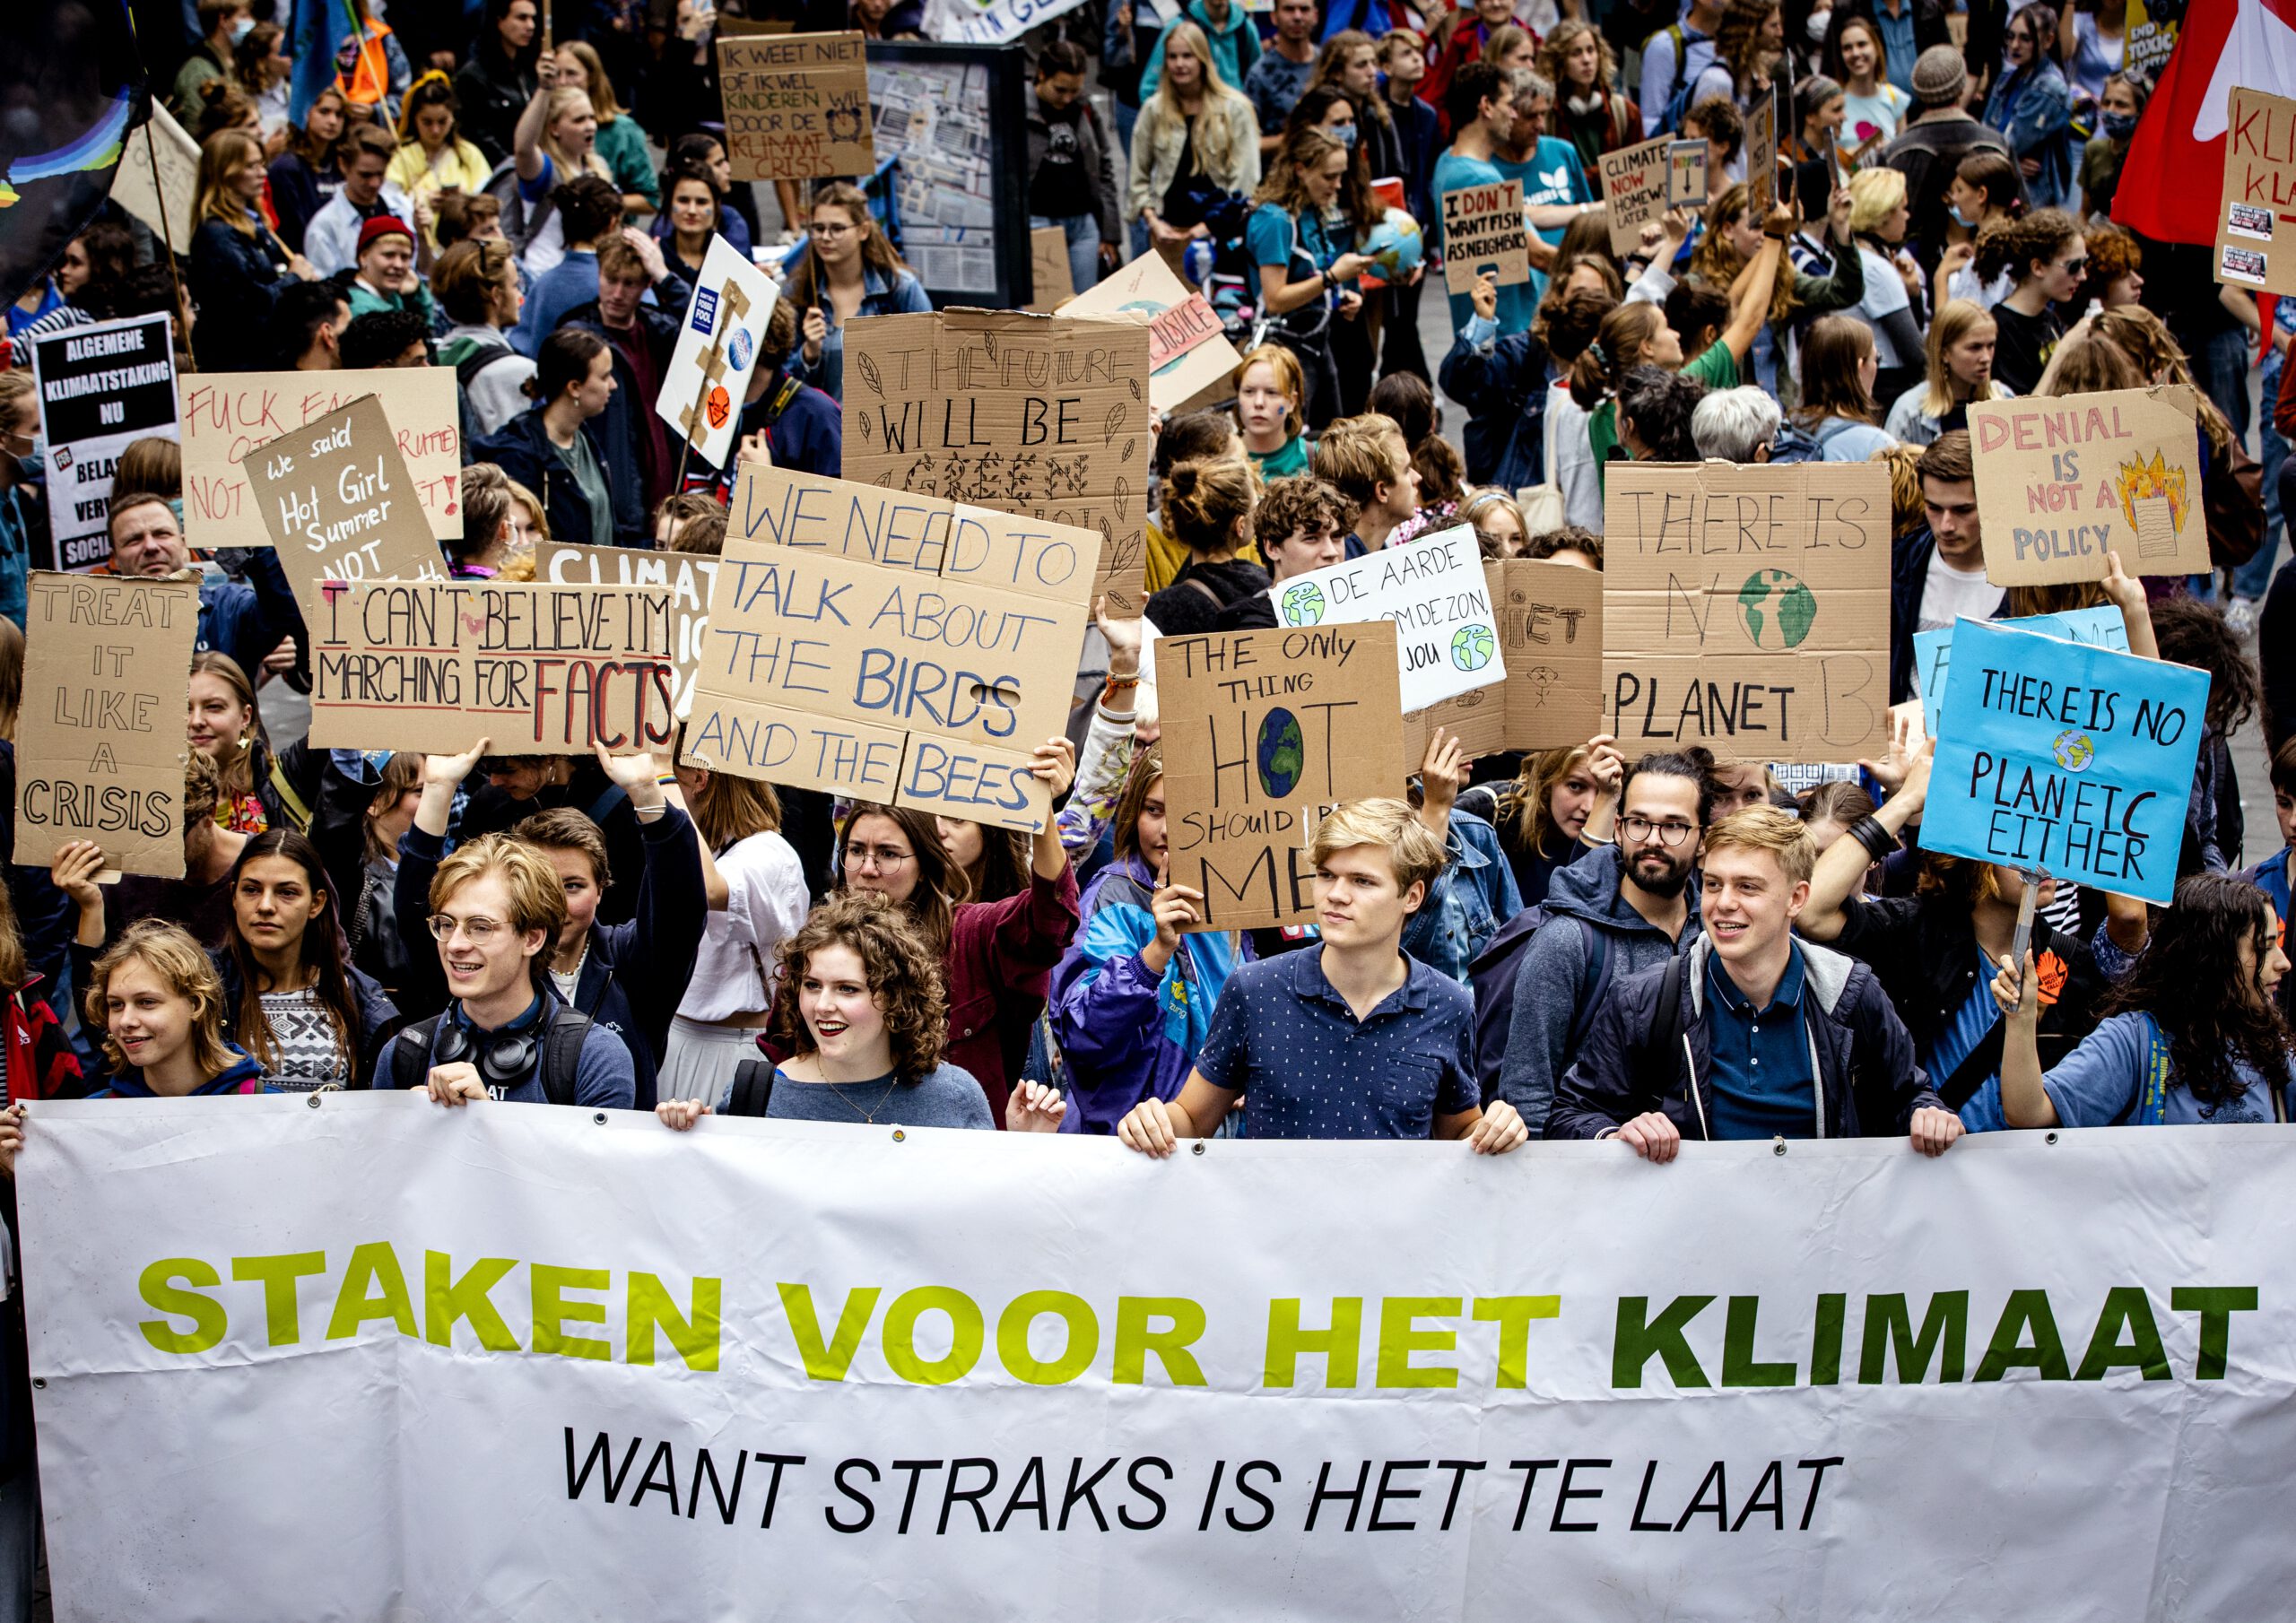 Ronald van Marlen, klimaatactivist van Extinction Rebellion, meldt dat ze volledig achter klimaatactivisten staan: ‘Het zijn geweldloze, disruptieve acties’